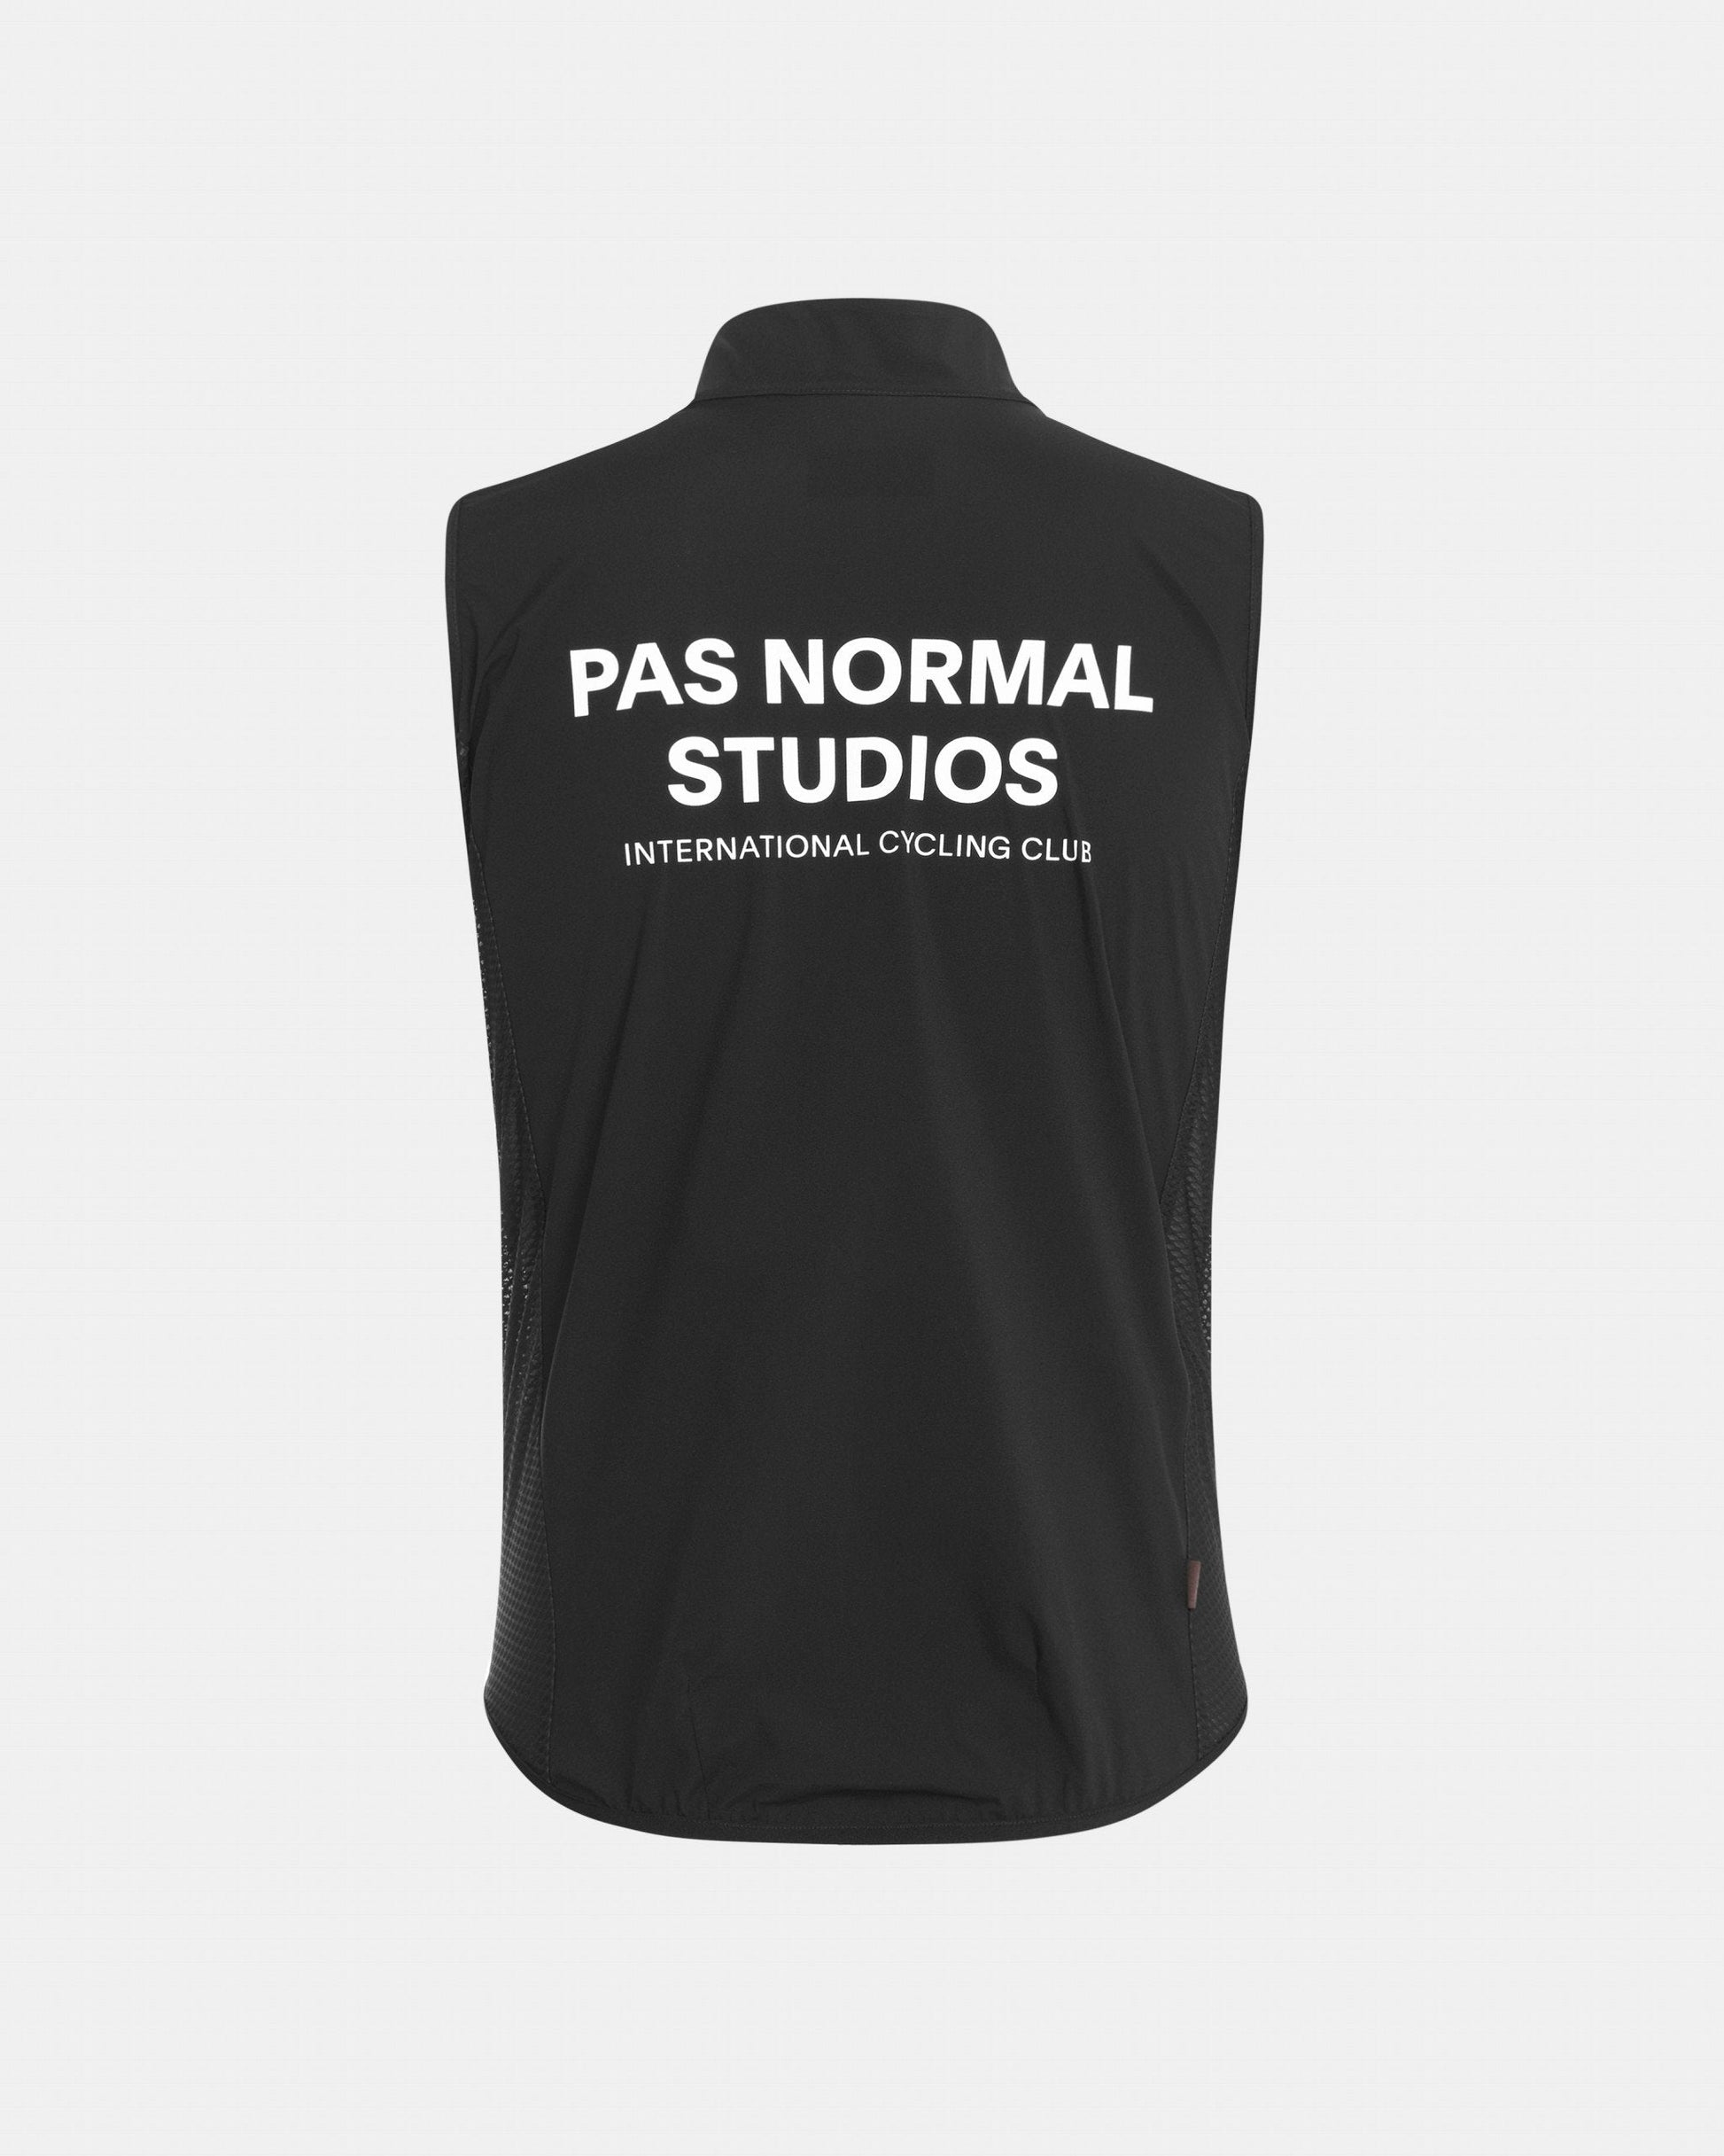 Pas Normal Studios - Veste Mechanism Stow Away Femme Vestes Pas Normal Studios 